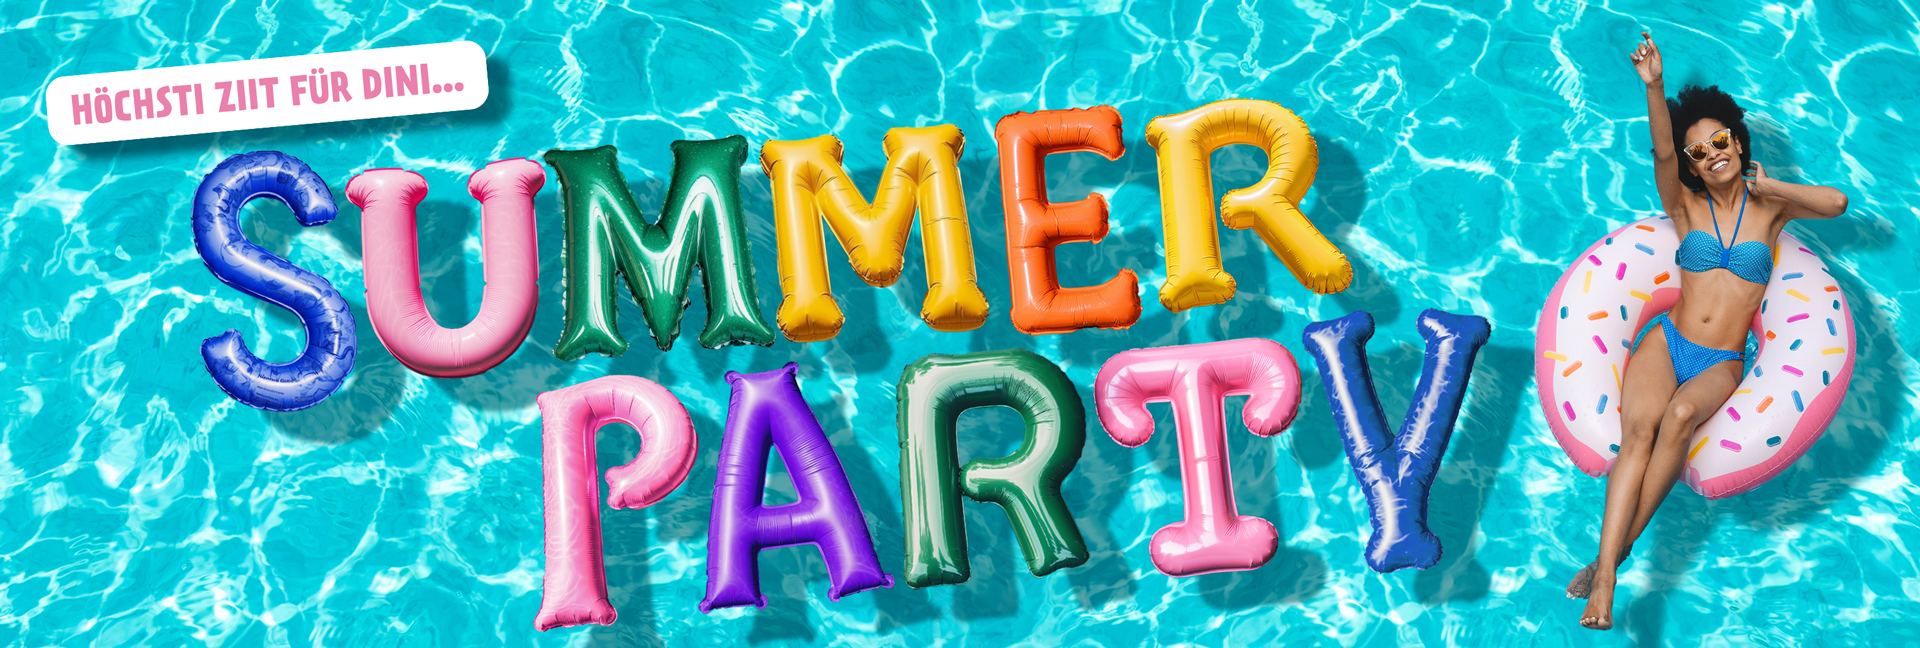 Sommerevents im Freien - So wird Deine Outdoor-Party zum Highlight 